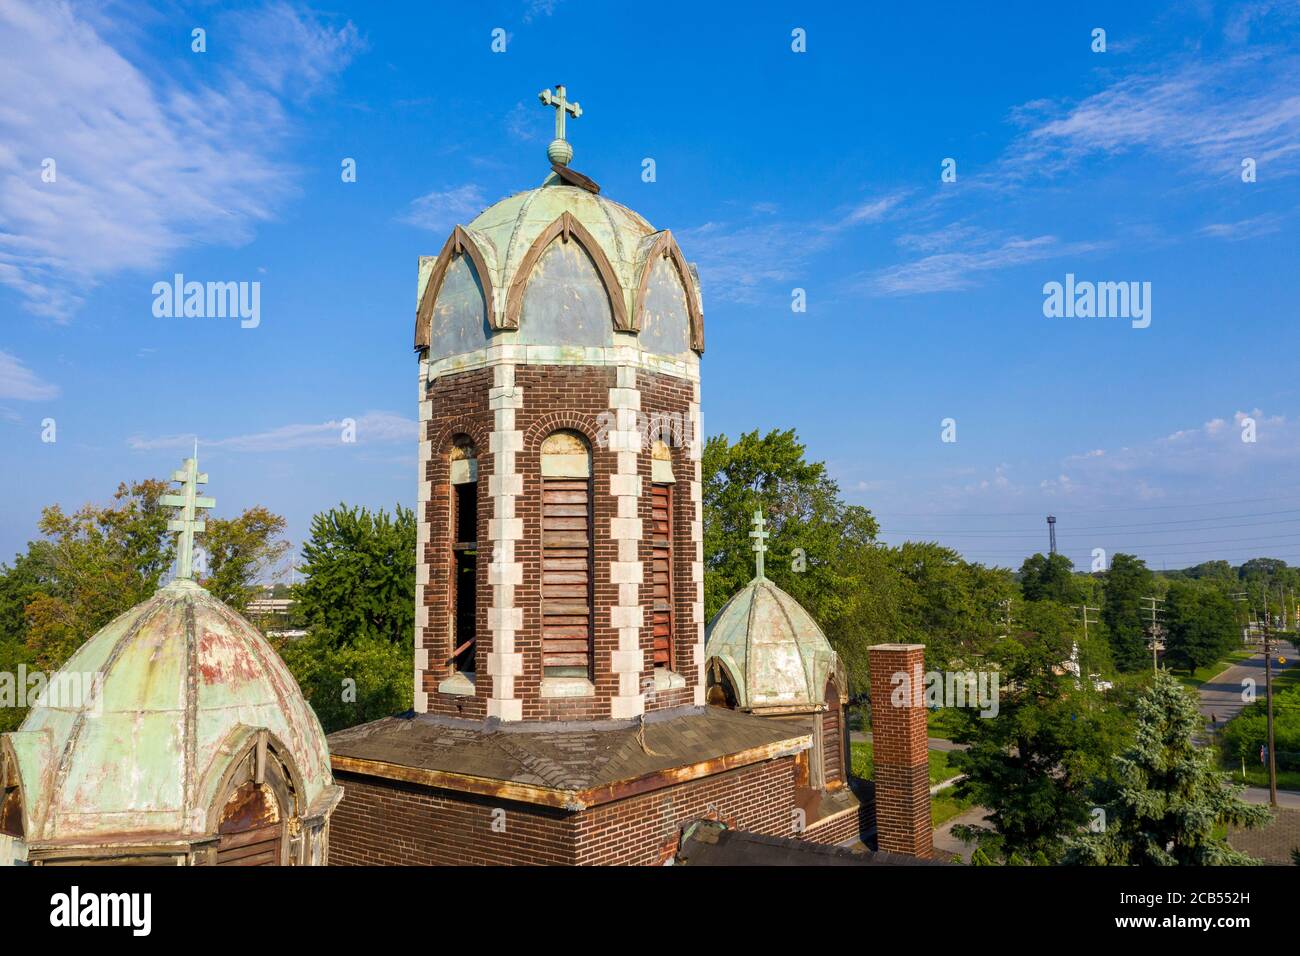 Detroit, Michigan - l'église orthodoxe Szent Janos a servi des dizaines de milliers d'immigrants hongrois qui se sont installés dans le quartier de Delray. Le churc Banque D'Images